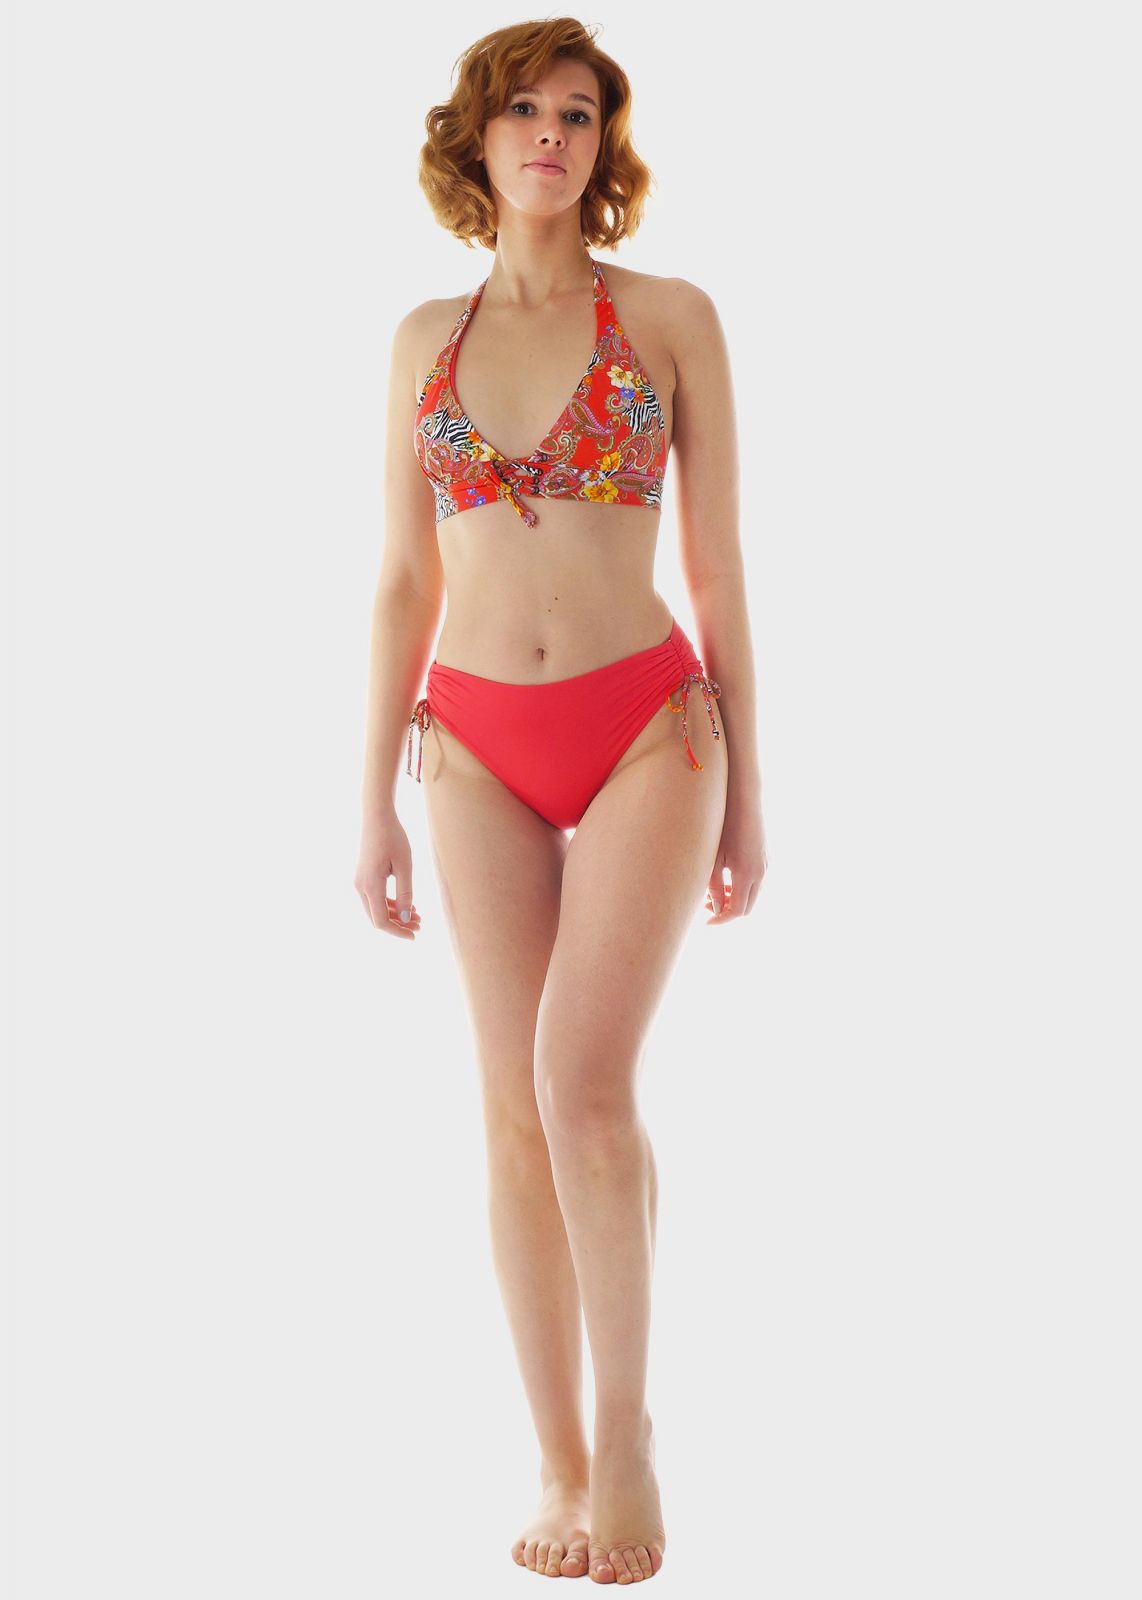 Γυναικείο σετ μαγιό bikini all print αποσπώμενη επένδυση slip κανονική γραμμή πλαϊνά ρυθμιζόμενα κορδόνια.Καλύπτει B Cup ΚΟΡΑΛΙ